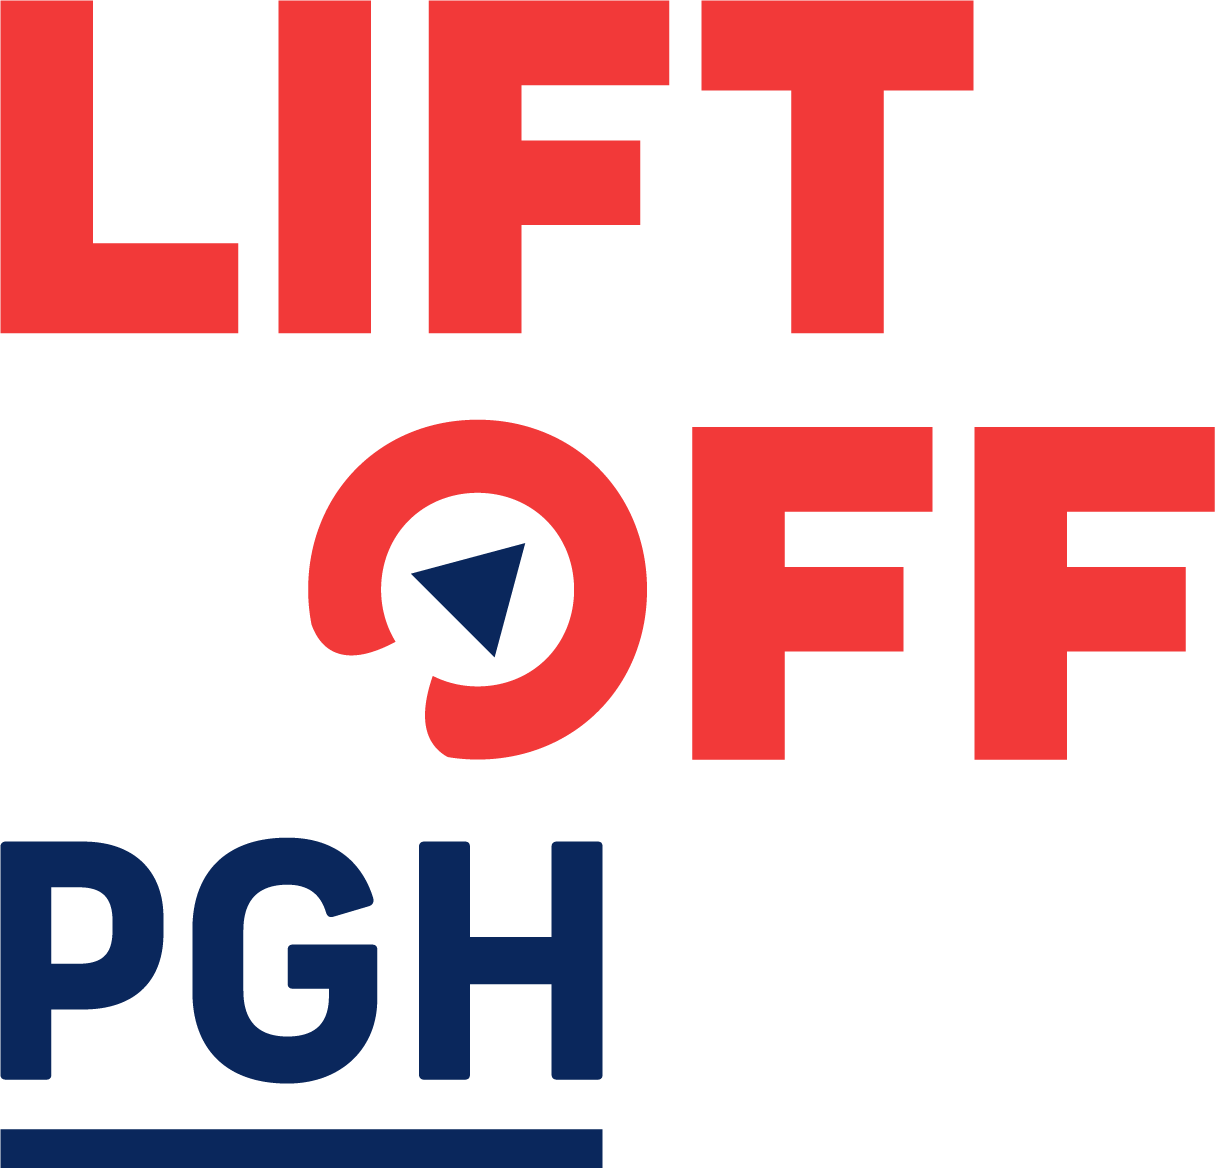 Liftoff PGH logo.